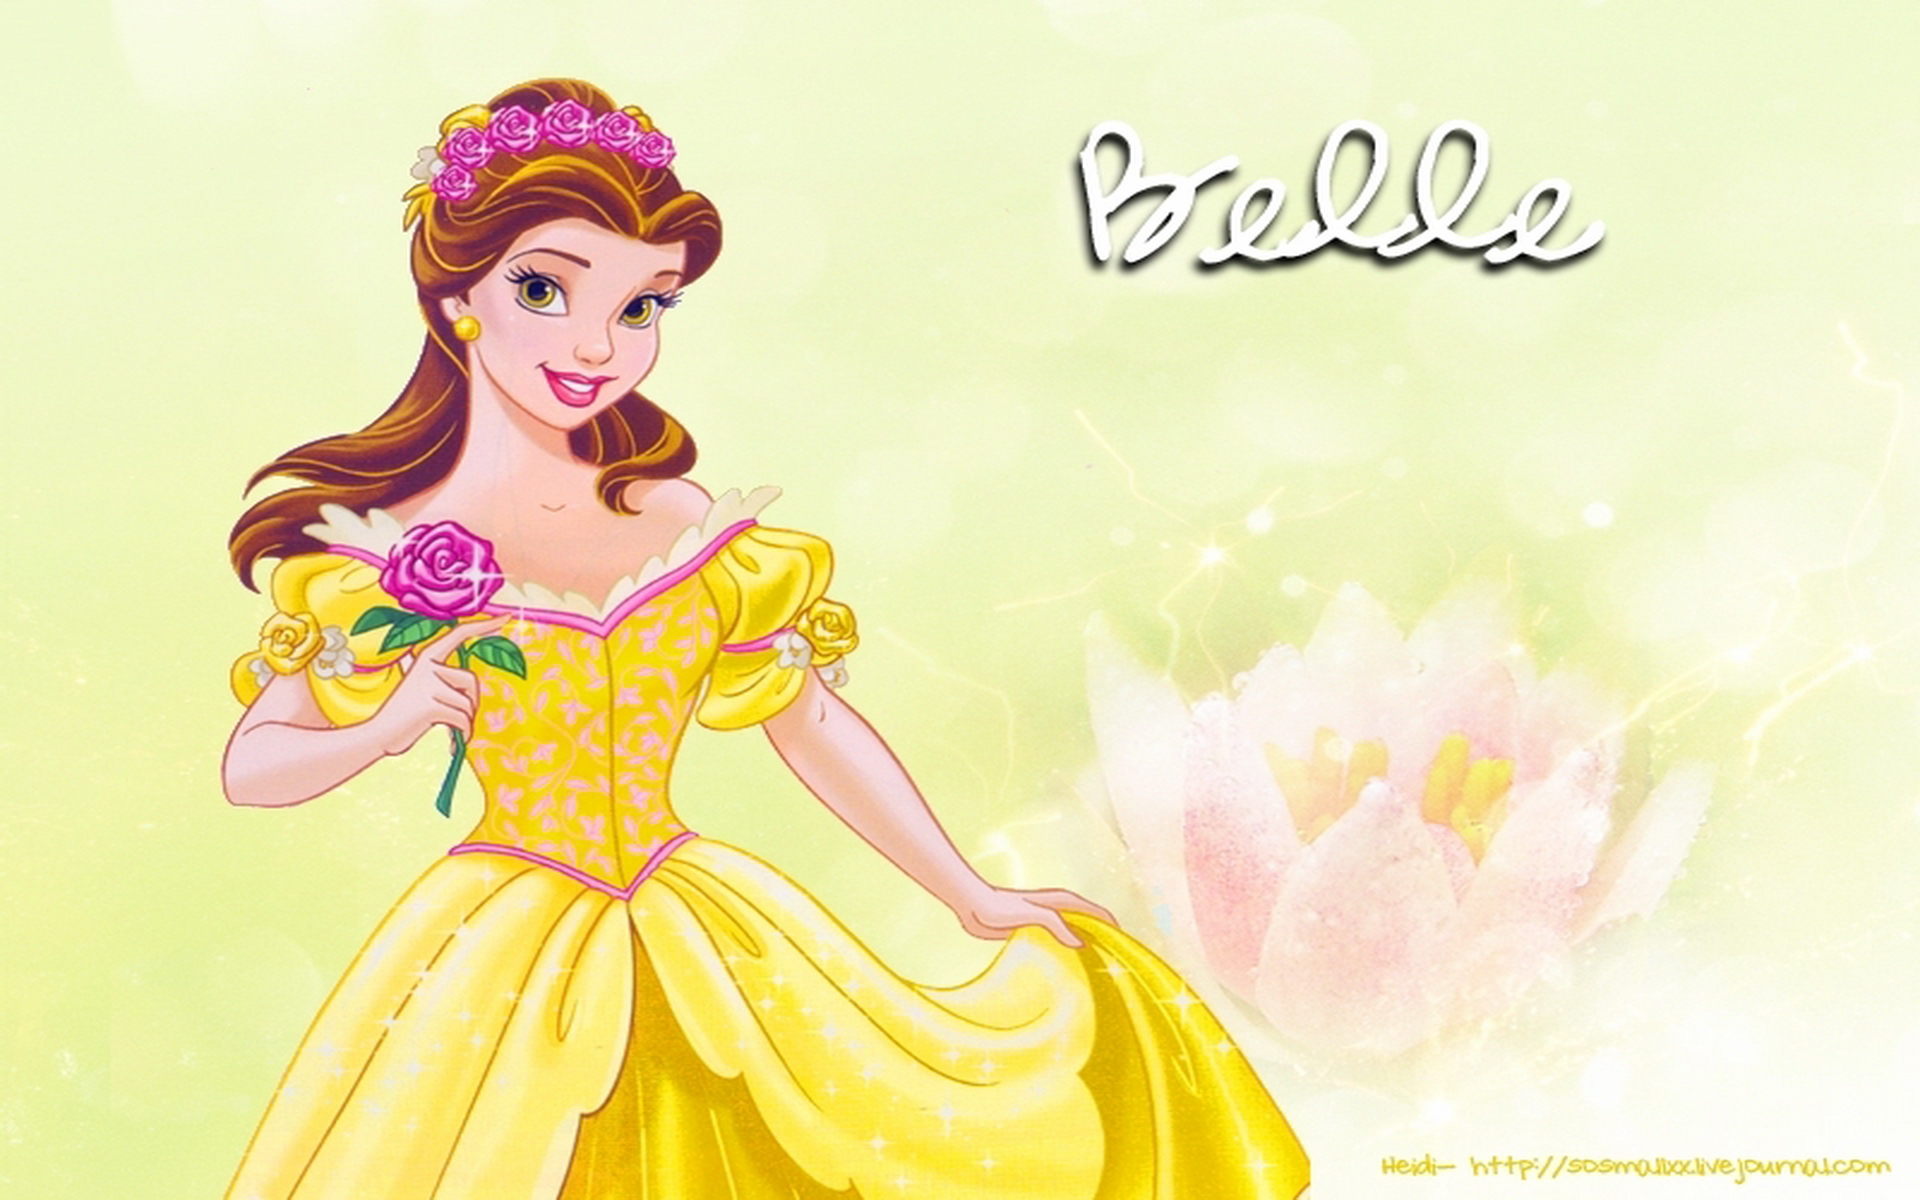 Wallpaper HD Widescreen Desktop Background Princess Belle Disney